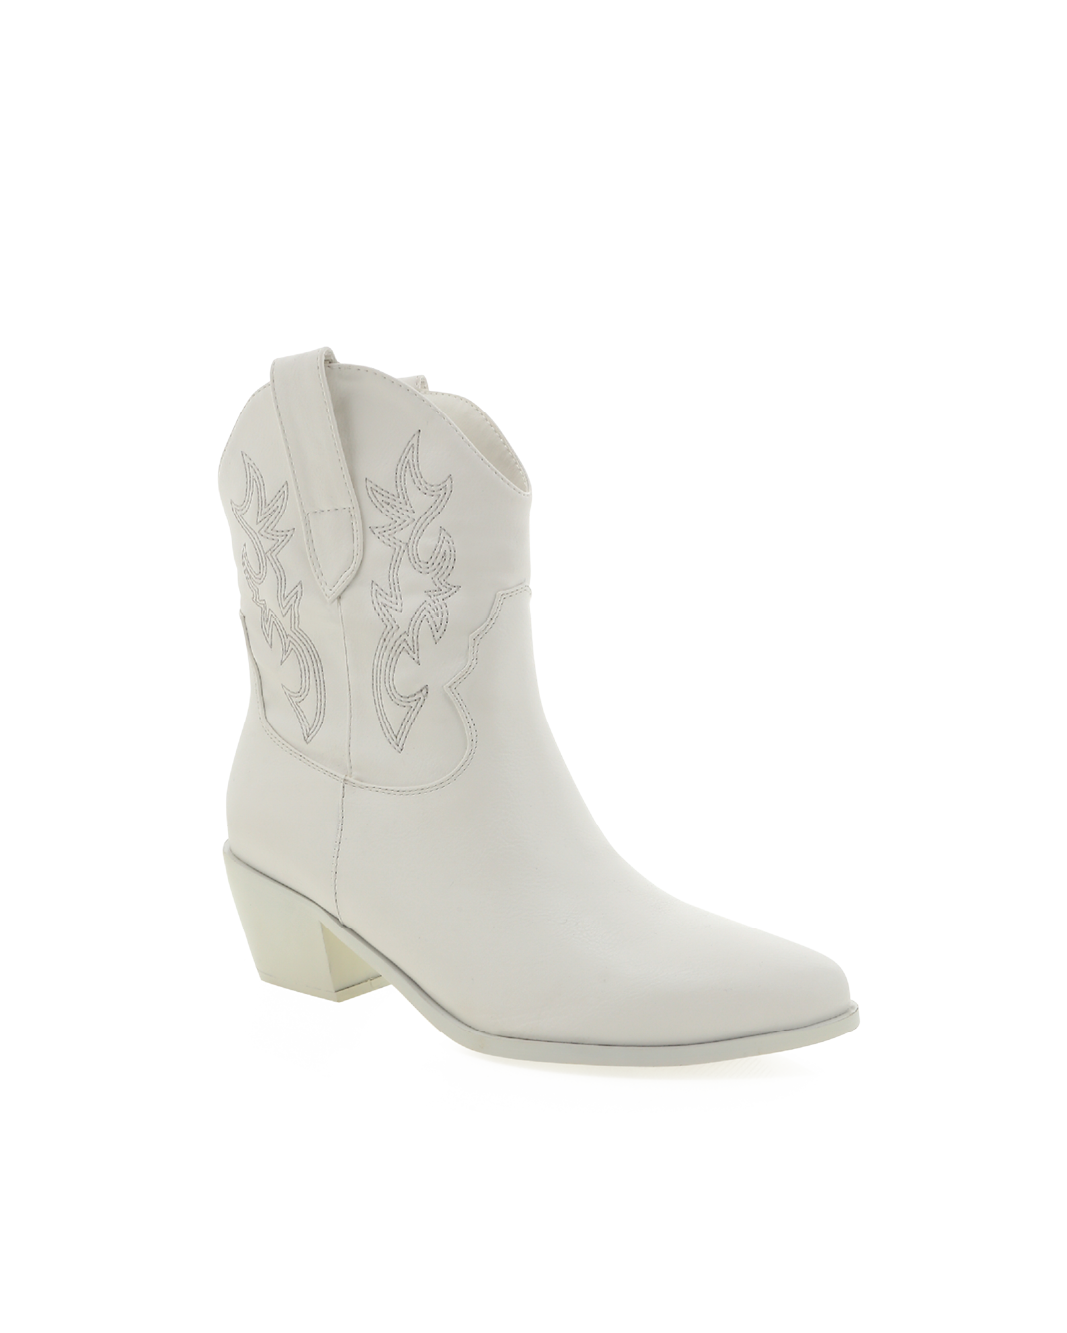 UMERI - WHITE CASUAL-Boots-Billini-BILLINI USA